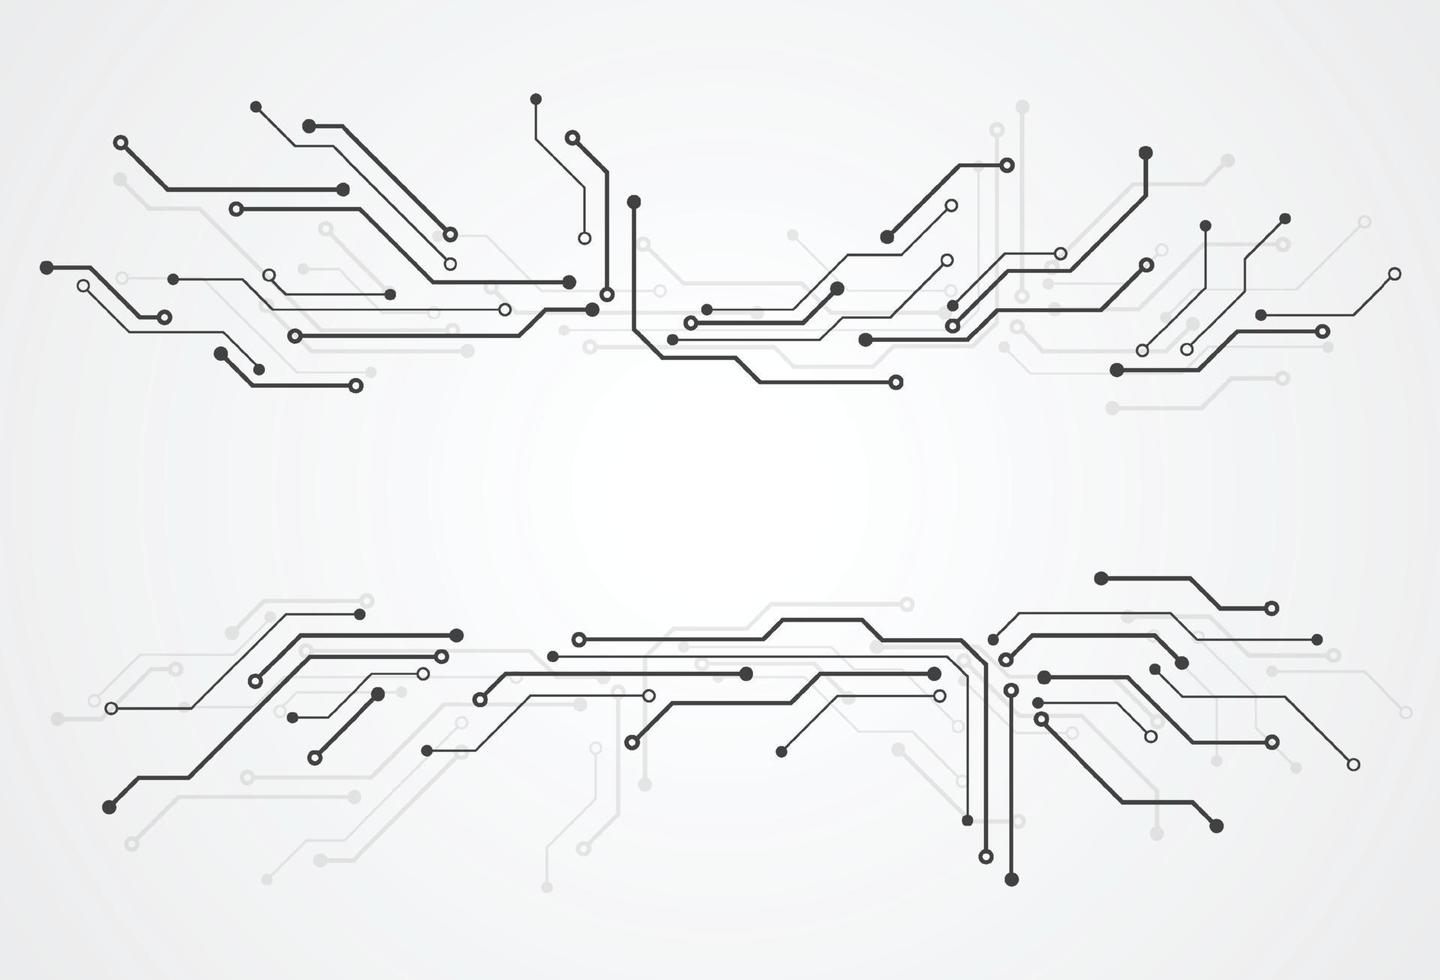 Fondo digital abstracto con textura de placa de circuito de tecnología. Ilustración de la placa base electrónica. concepto de comunicación e ingeniería. ilustración vectorial vector